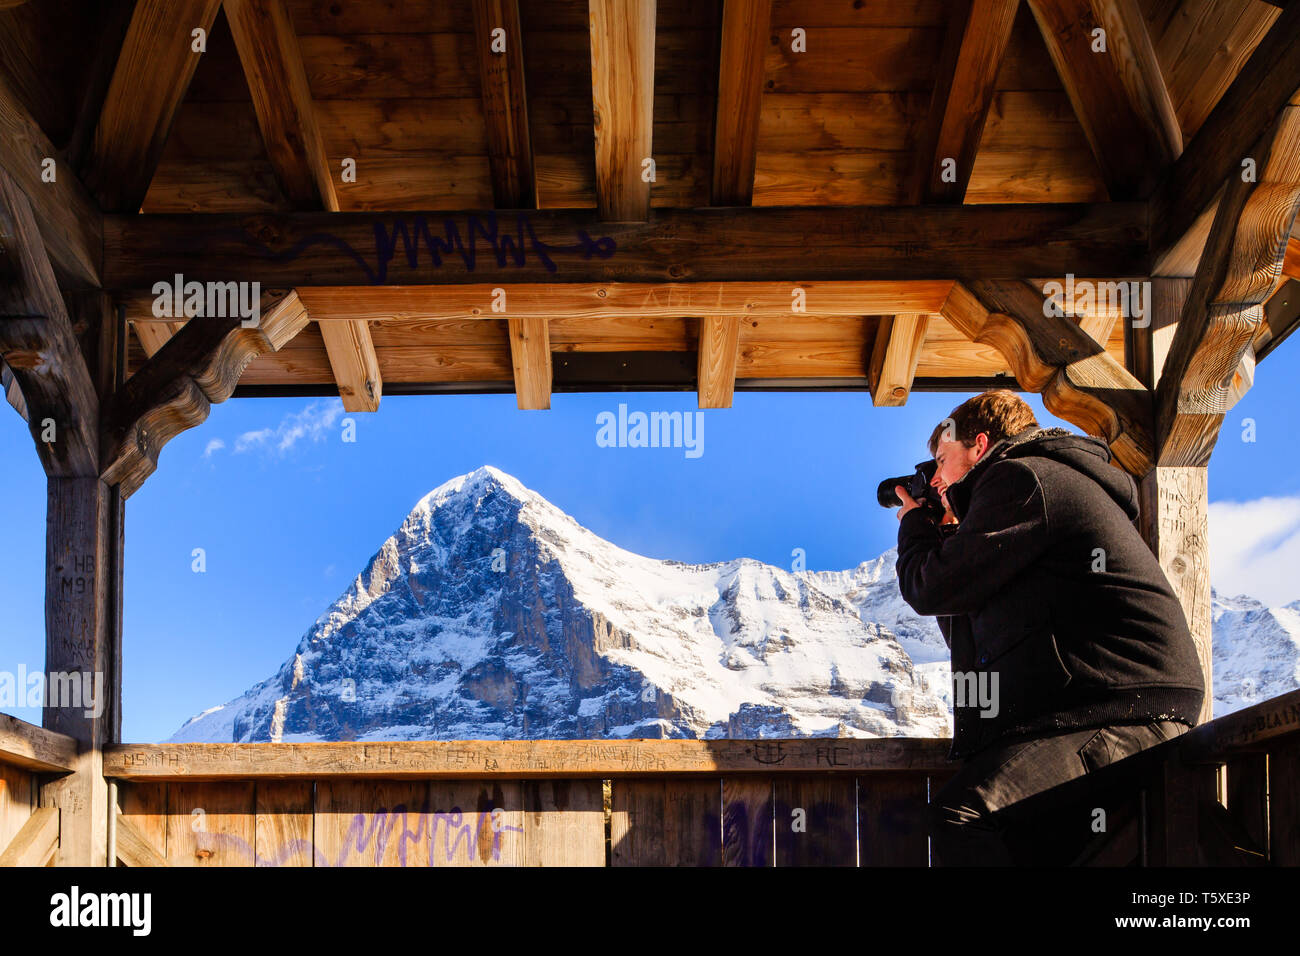 Man photographing face nord de l'Eiger, d'afficher un abri en hiver. Kleine Scheidegg, Oberland Bernois, Suisse (Suisse) Banque D'Images